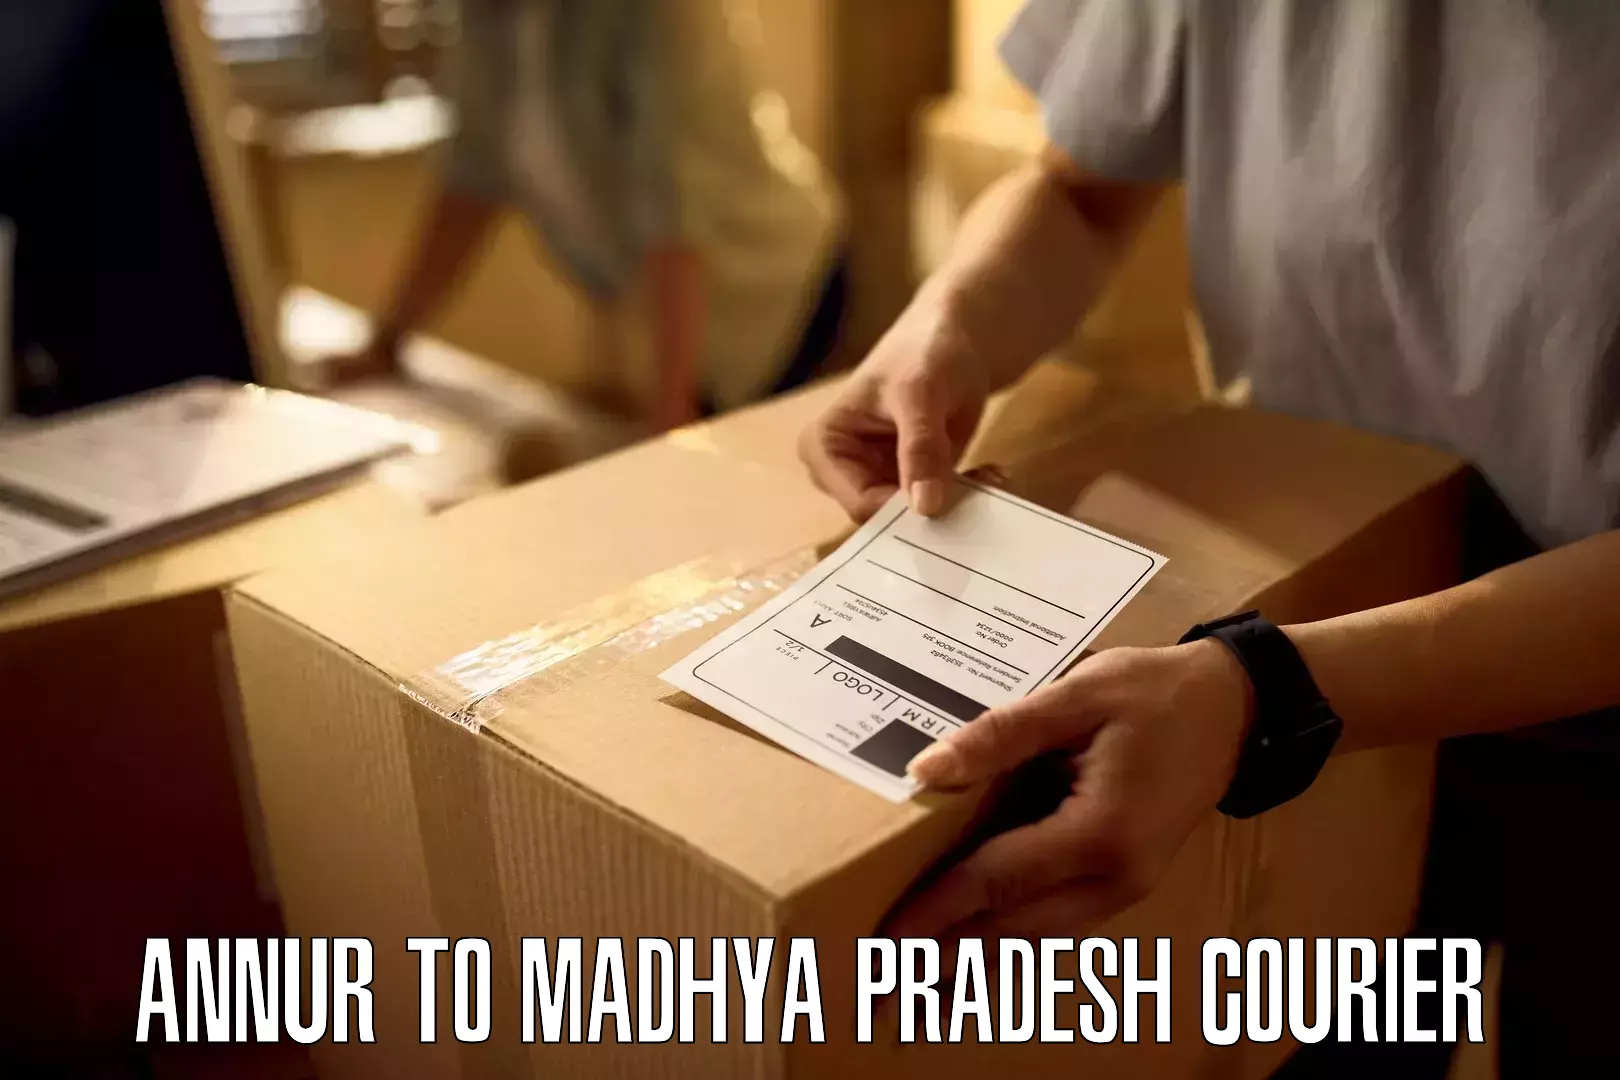 24-hour courier service Annur to Amarwara